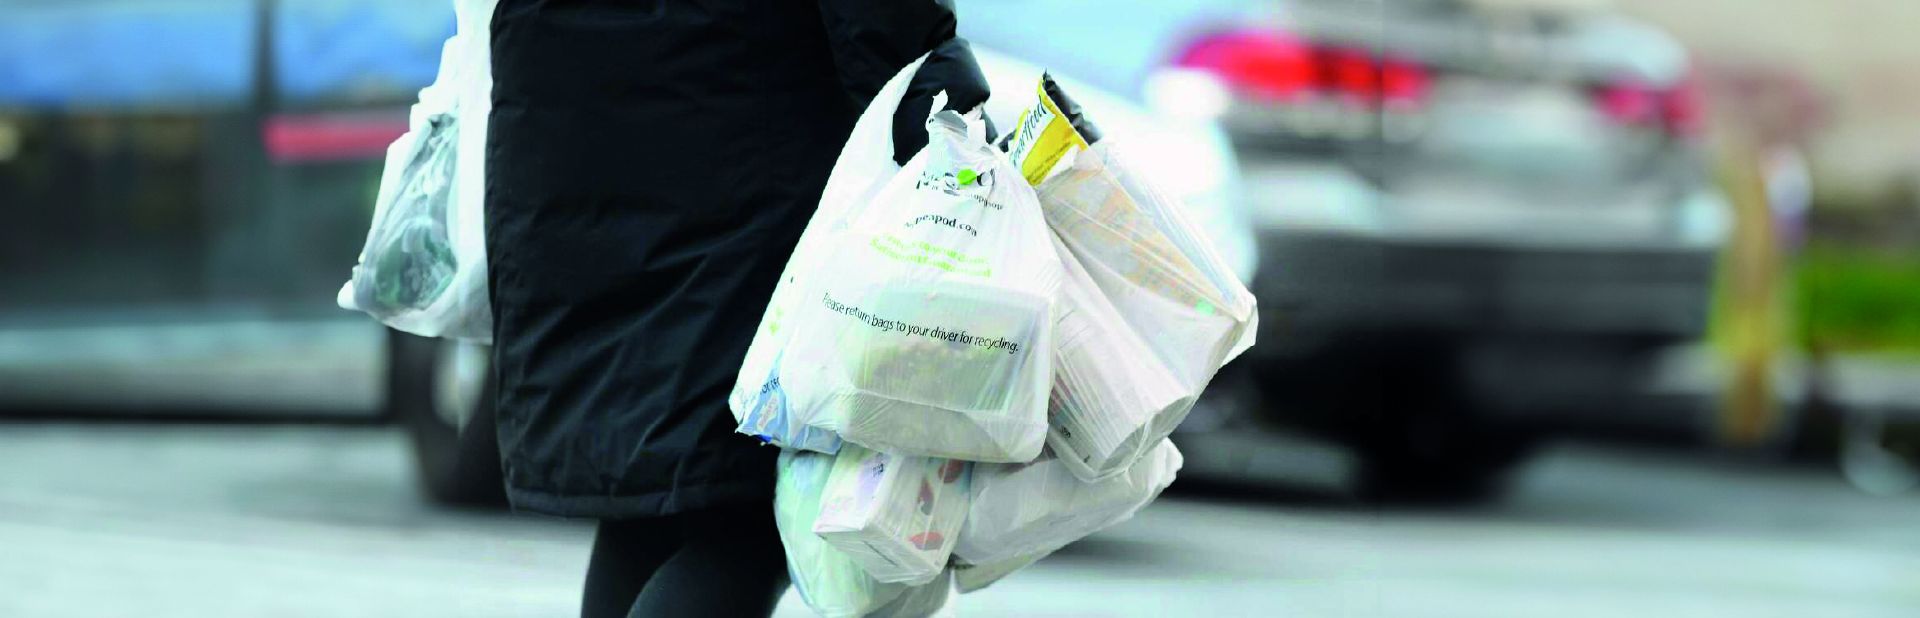 Shopper Biodegradabili